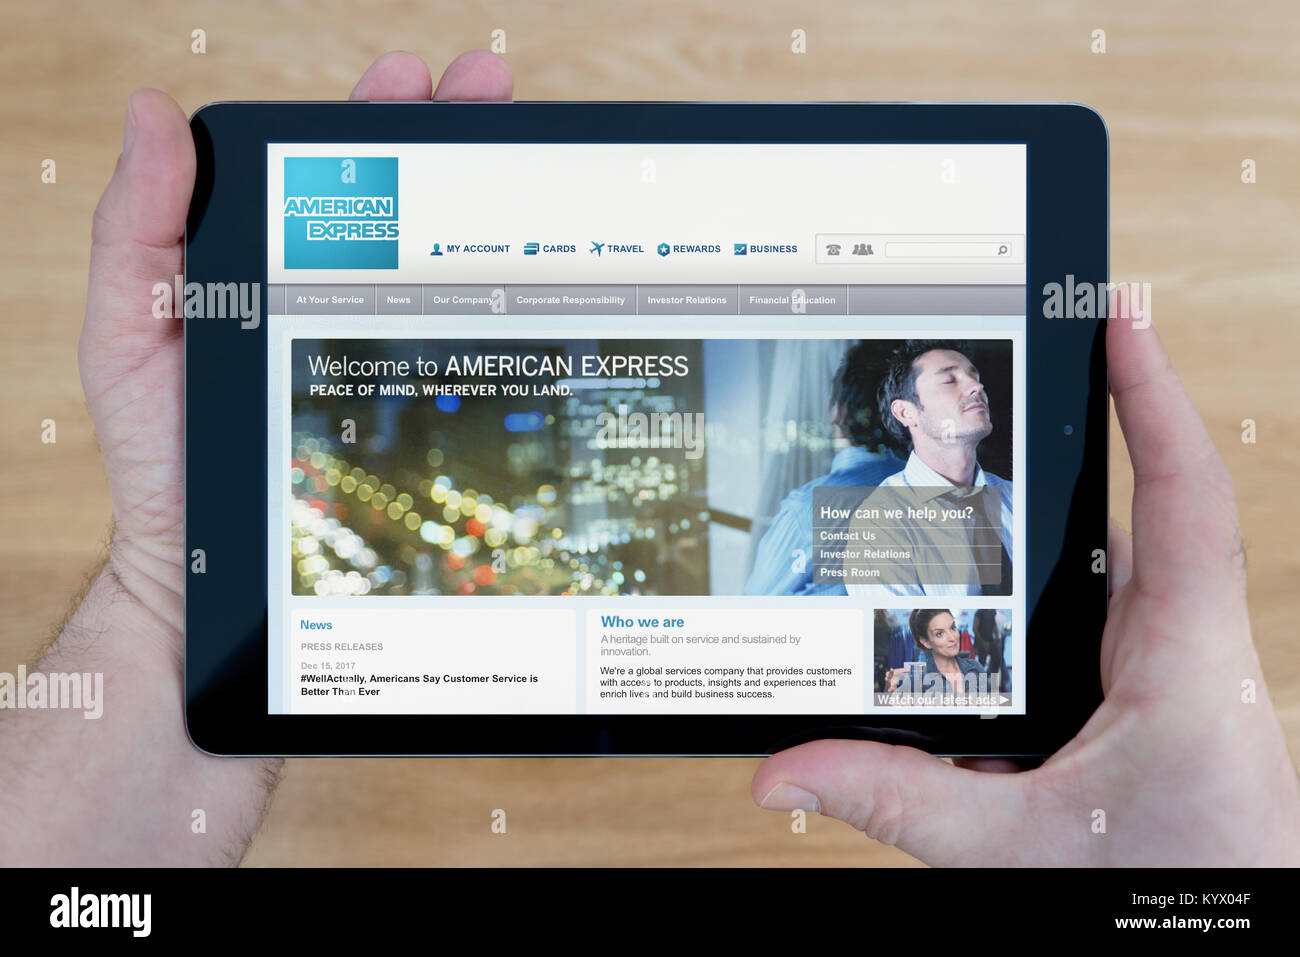 Un homme regarde le site d'American Express sur son iPad tablet device, avec une table en bois page contexte (usage éditorial uniquement) Banque D'Images